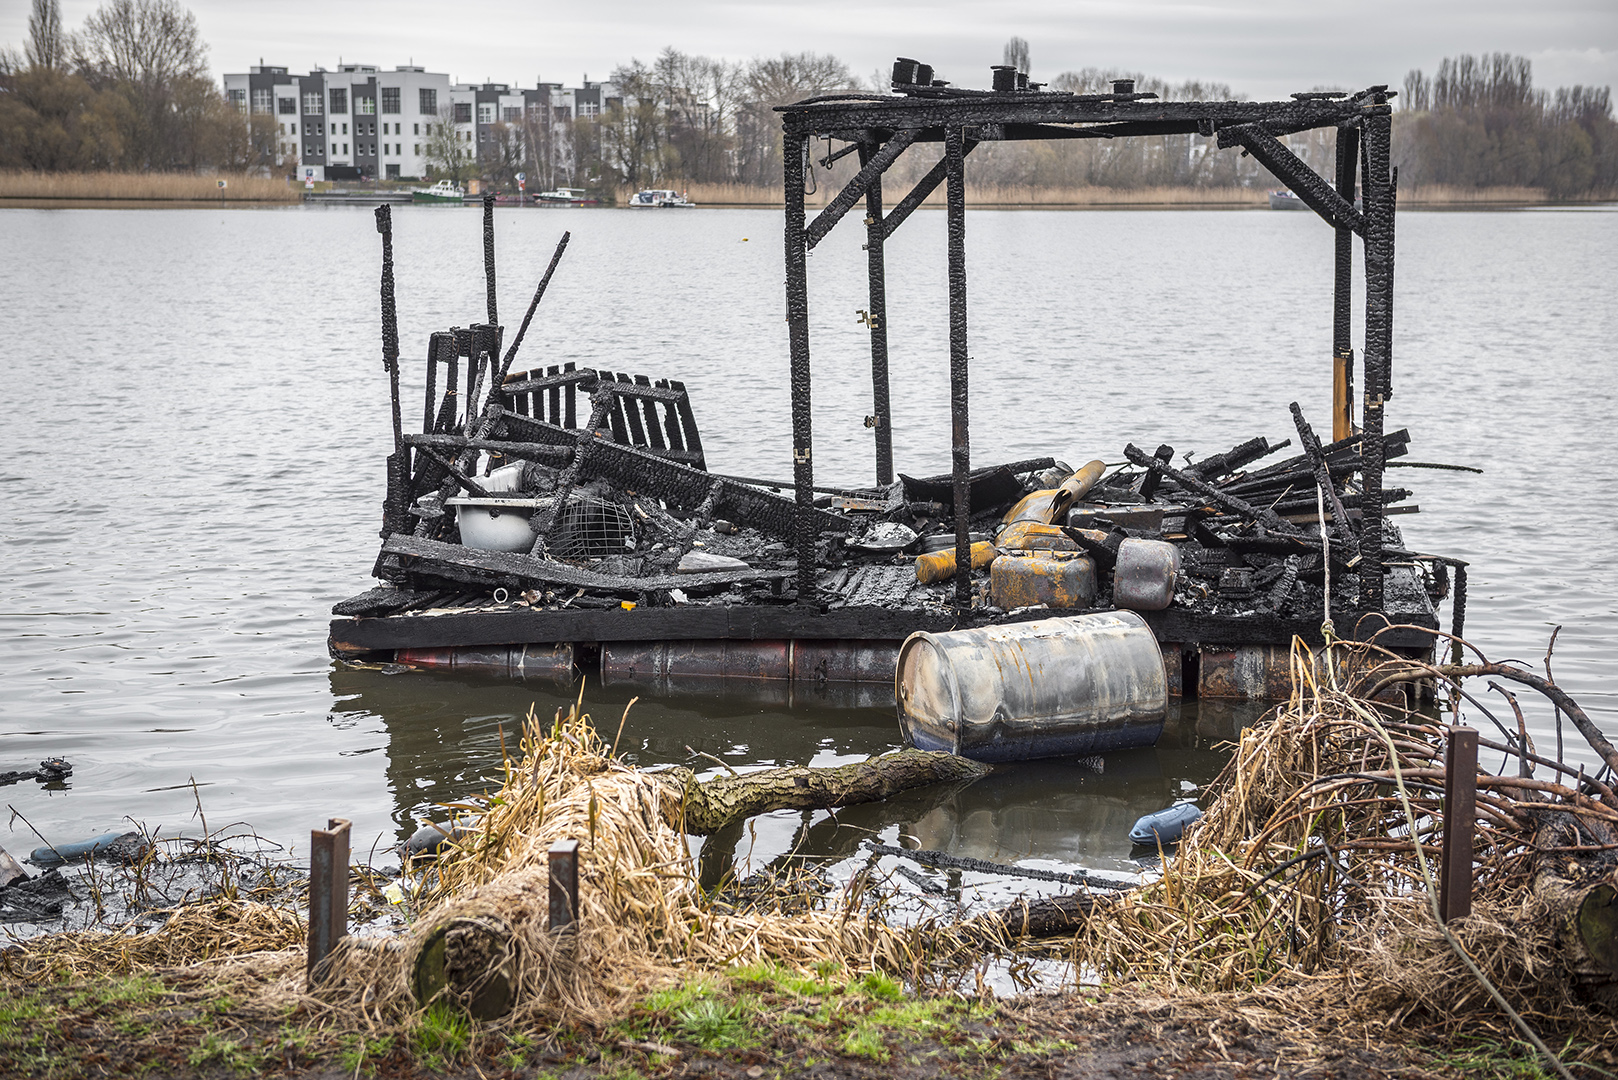 Ausgebrannte Boote von Lummerland, am Tag nach dem Brand. Rummelsburger Bucht, Berlin Lichtenberg, 23.03.2017